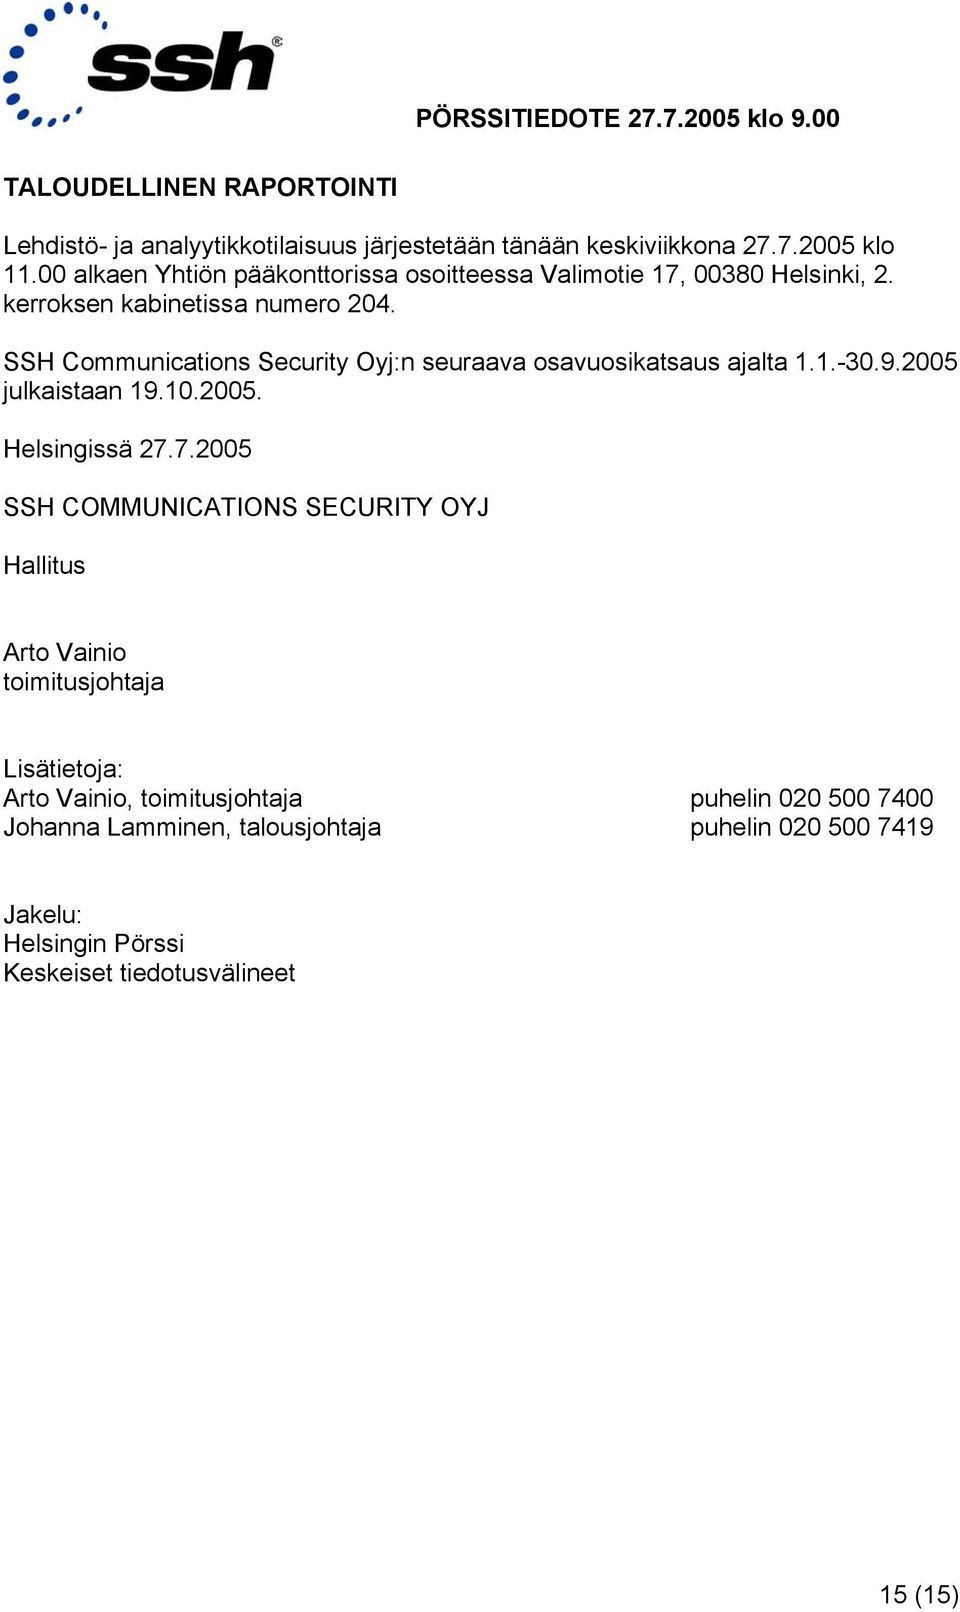 SSH Communications Security Oyj:n seuraava osavuosikatsaus ajalta 1.1.-30.9. julkaistaan 19.10.. Helsingissä 27.